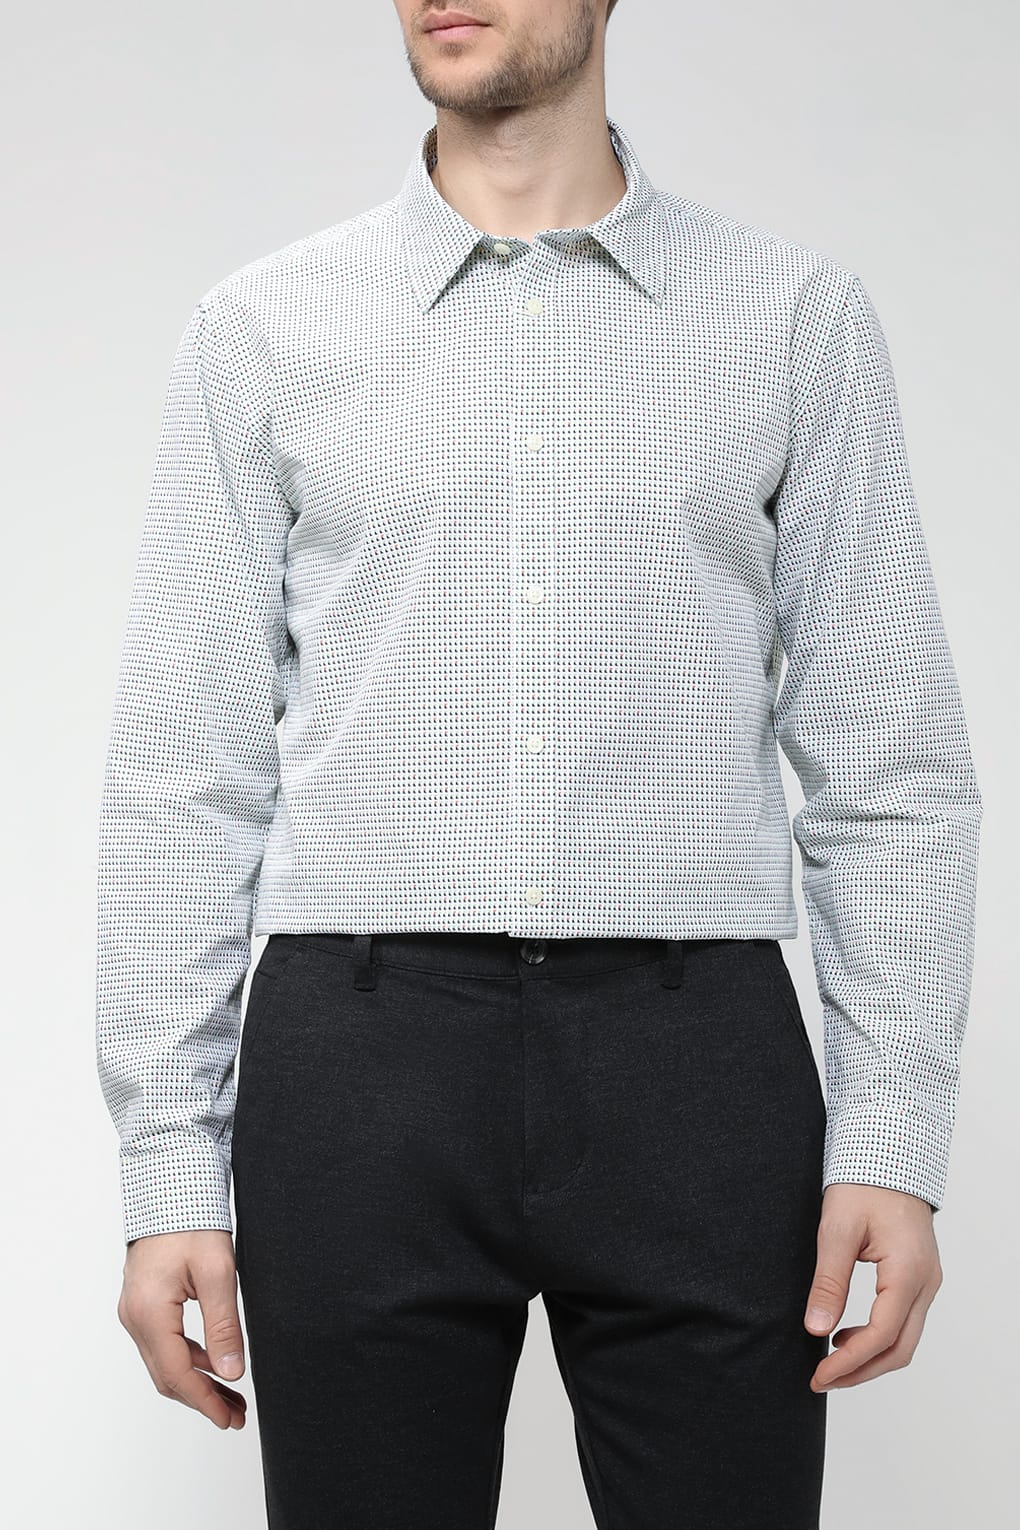 Рубашка мужская Esprit Casual 013EE2F303 белая S